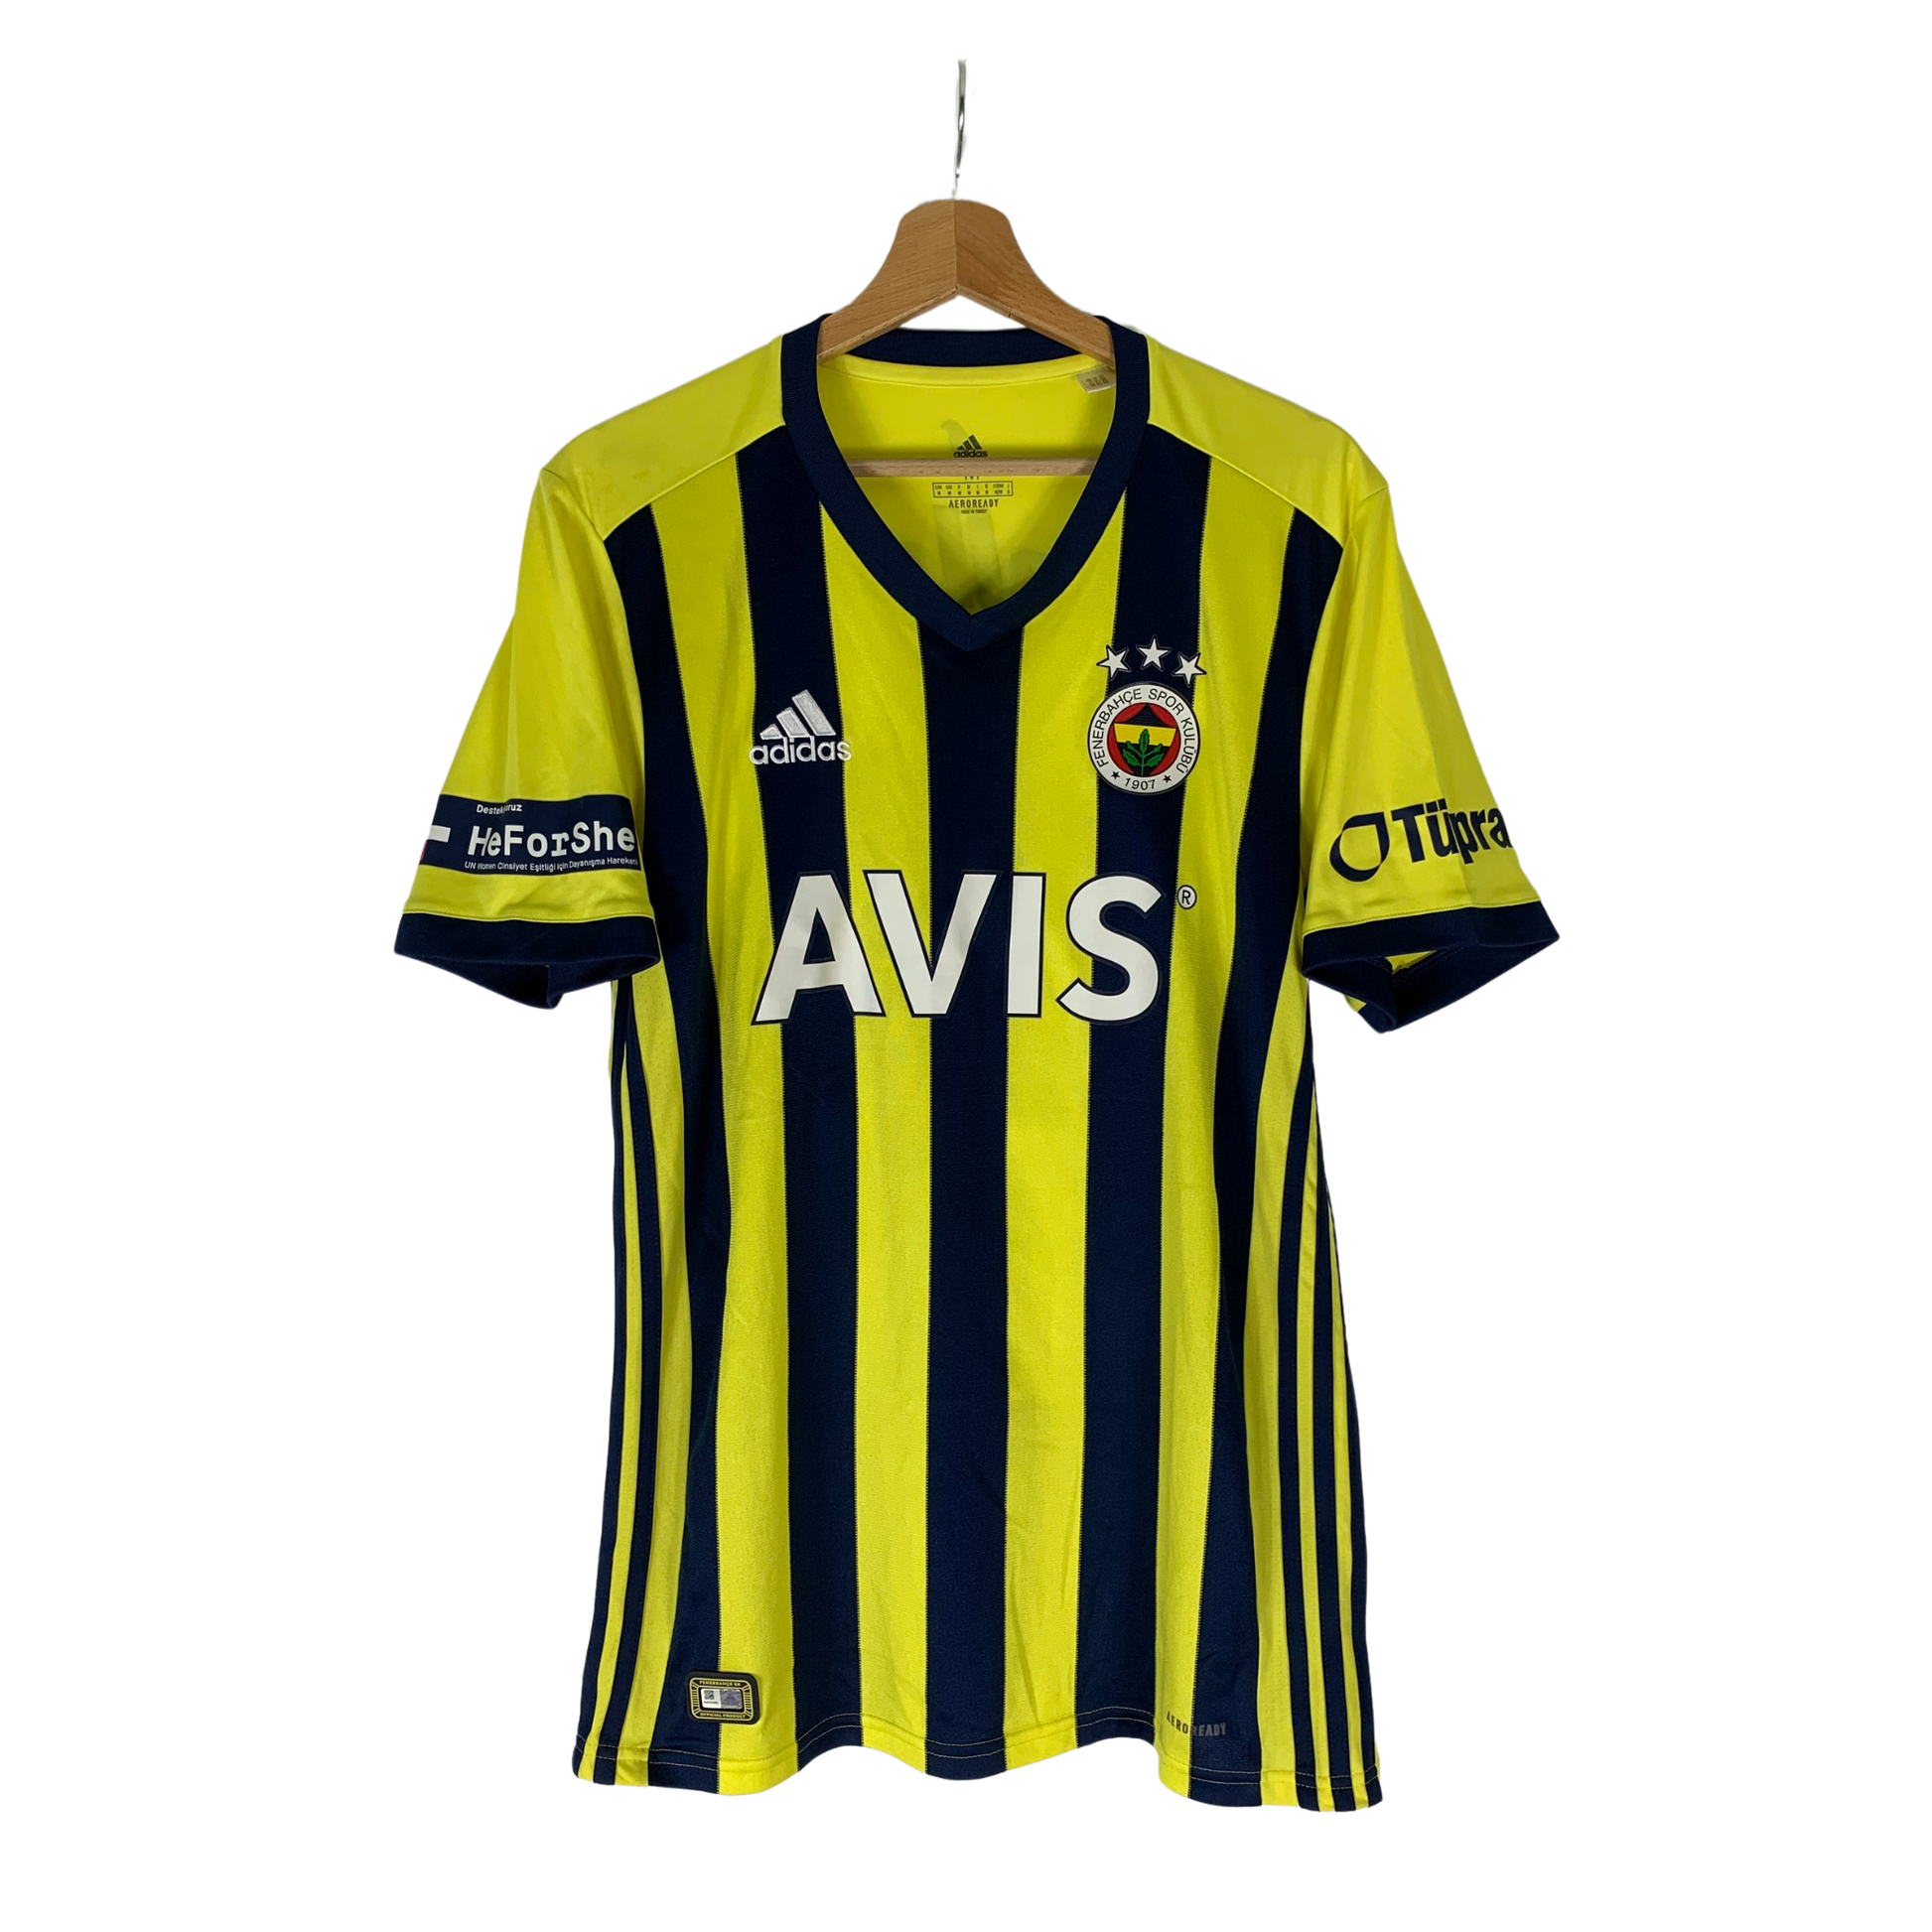 Classic Football Shirt Fenerbahce season 2020-2021 - Özil at InnoFoot